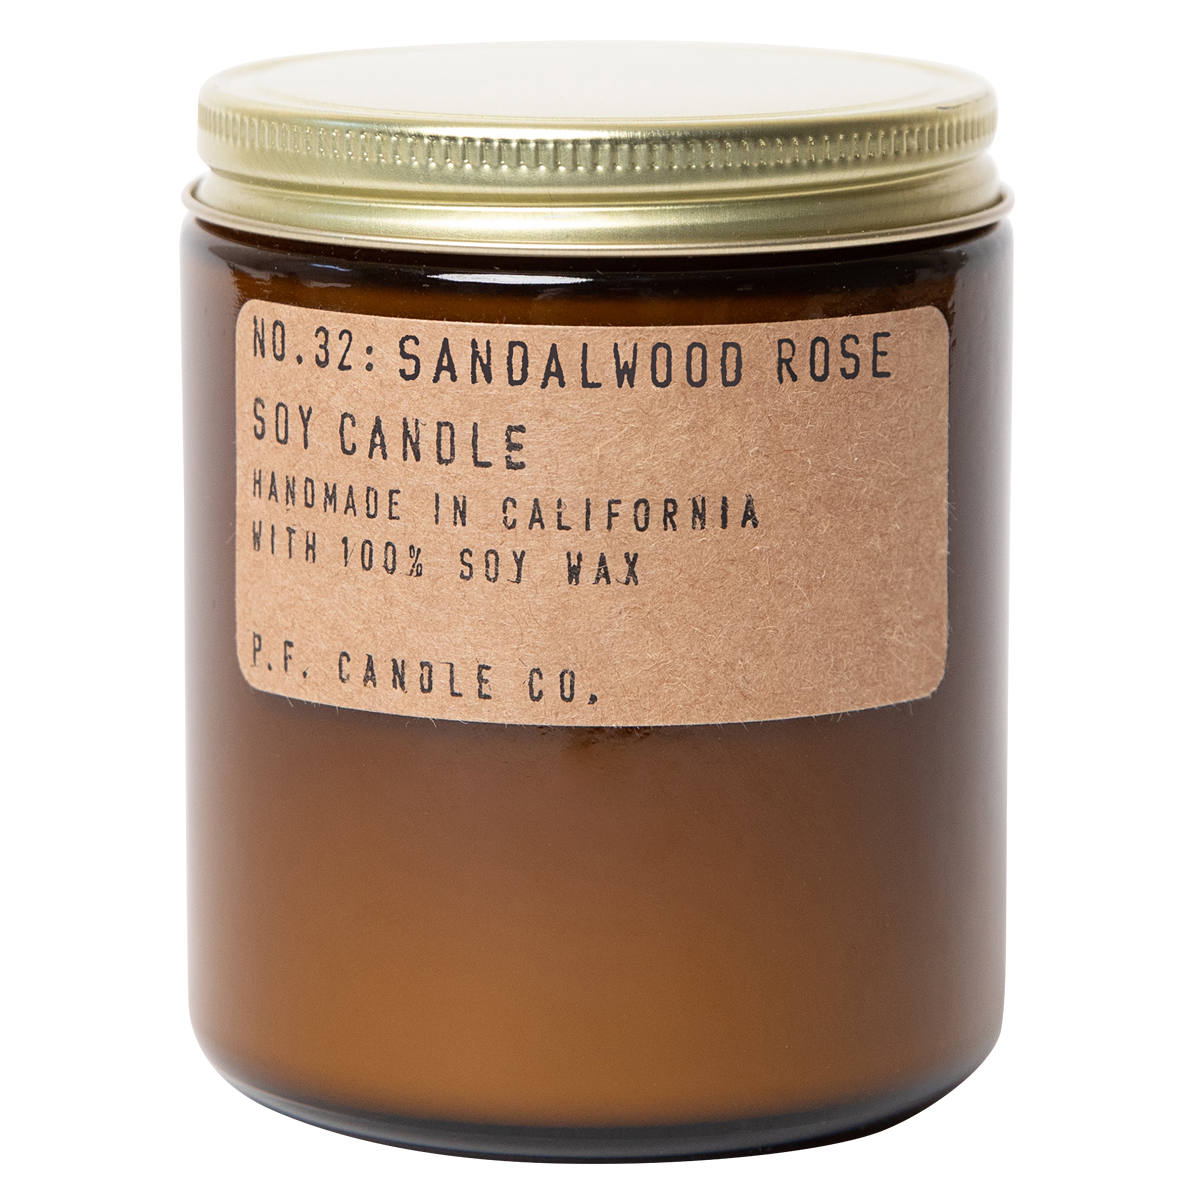 P.F. Candle Co. NO.32 Standard Candle Sandalwood Rose 204g - интернет-магазин профессиональной косметики Spadream, изображение 35064